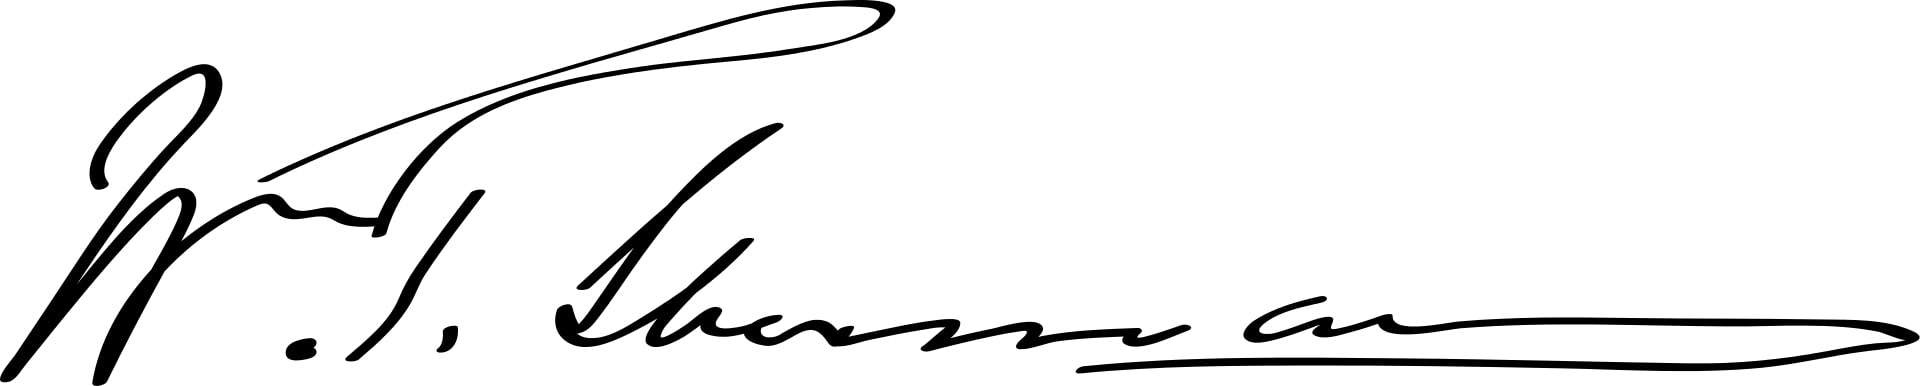 William Tecumseh Sherman Signature